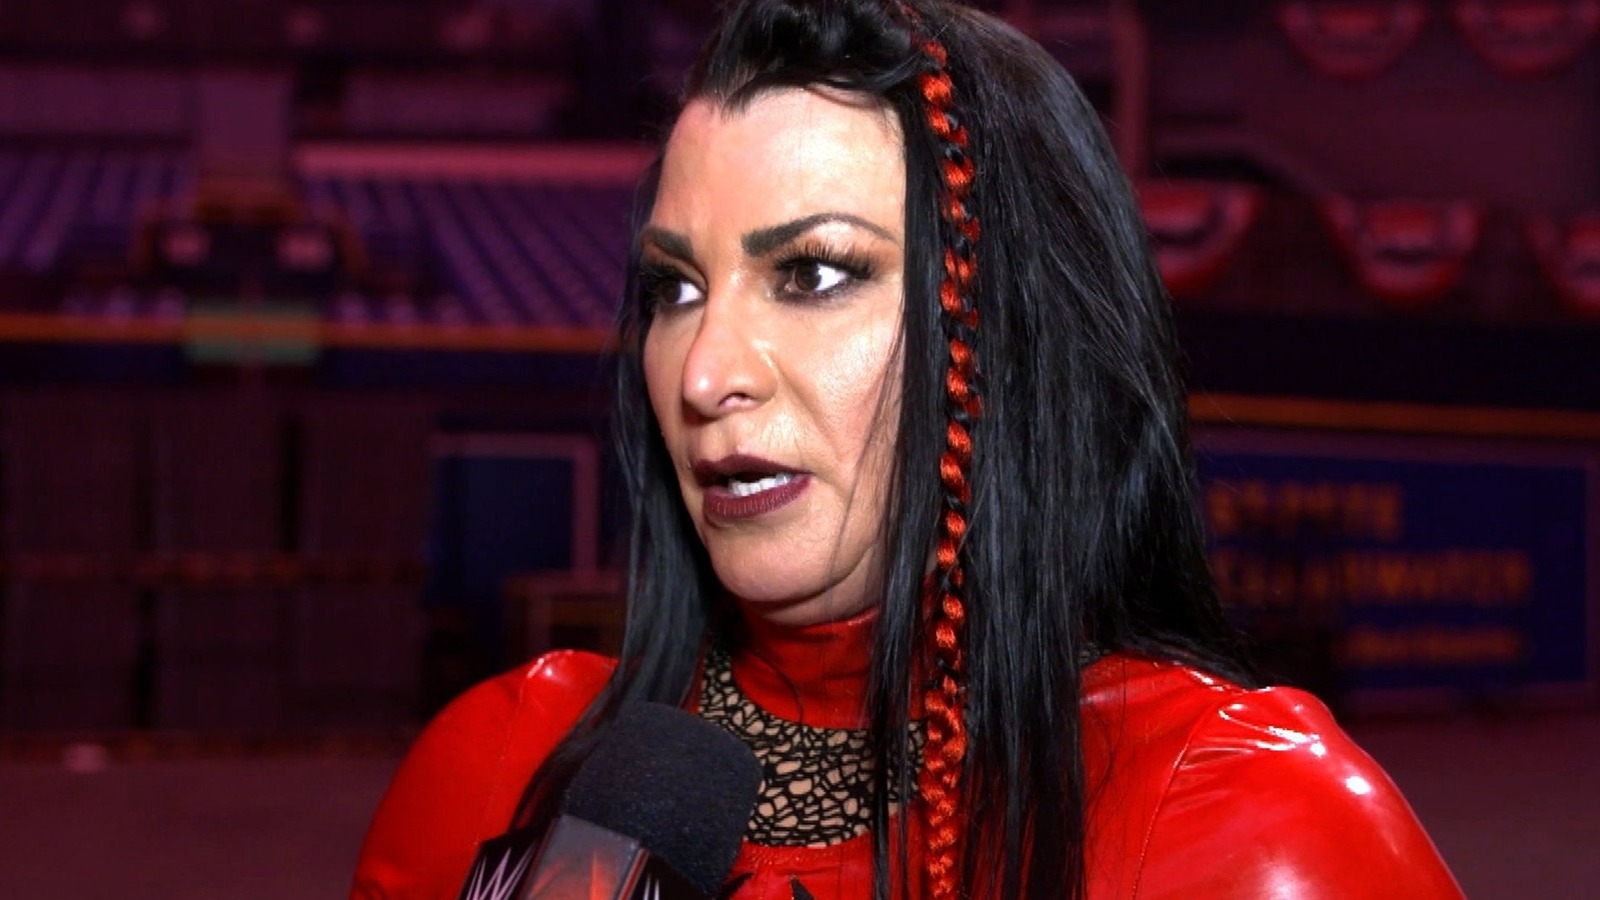 Victoria halagada por el tributo a Trish Stratus WWE Payback